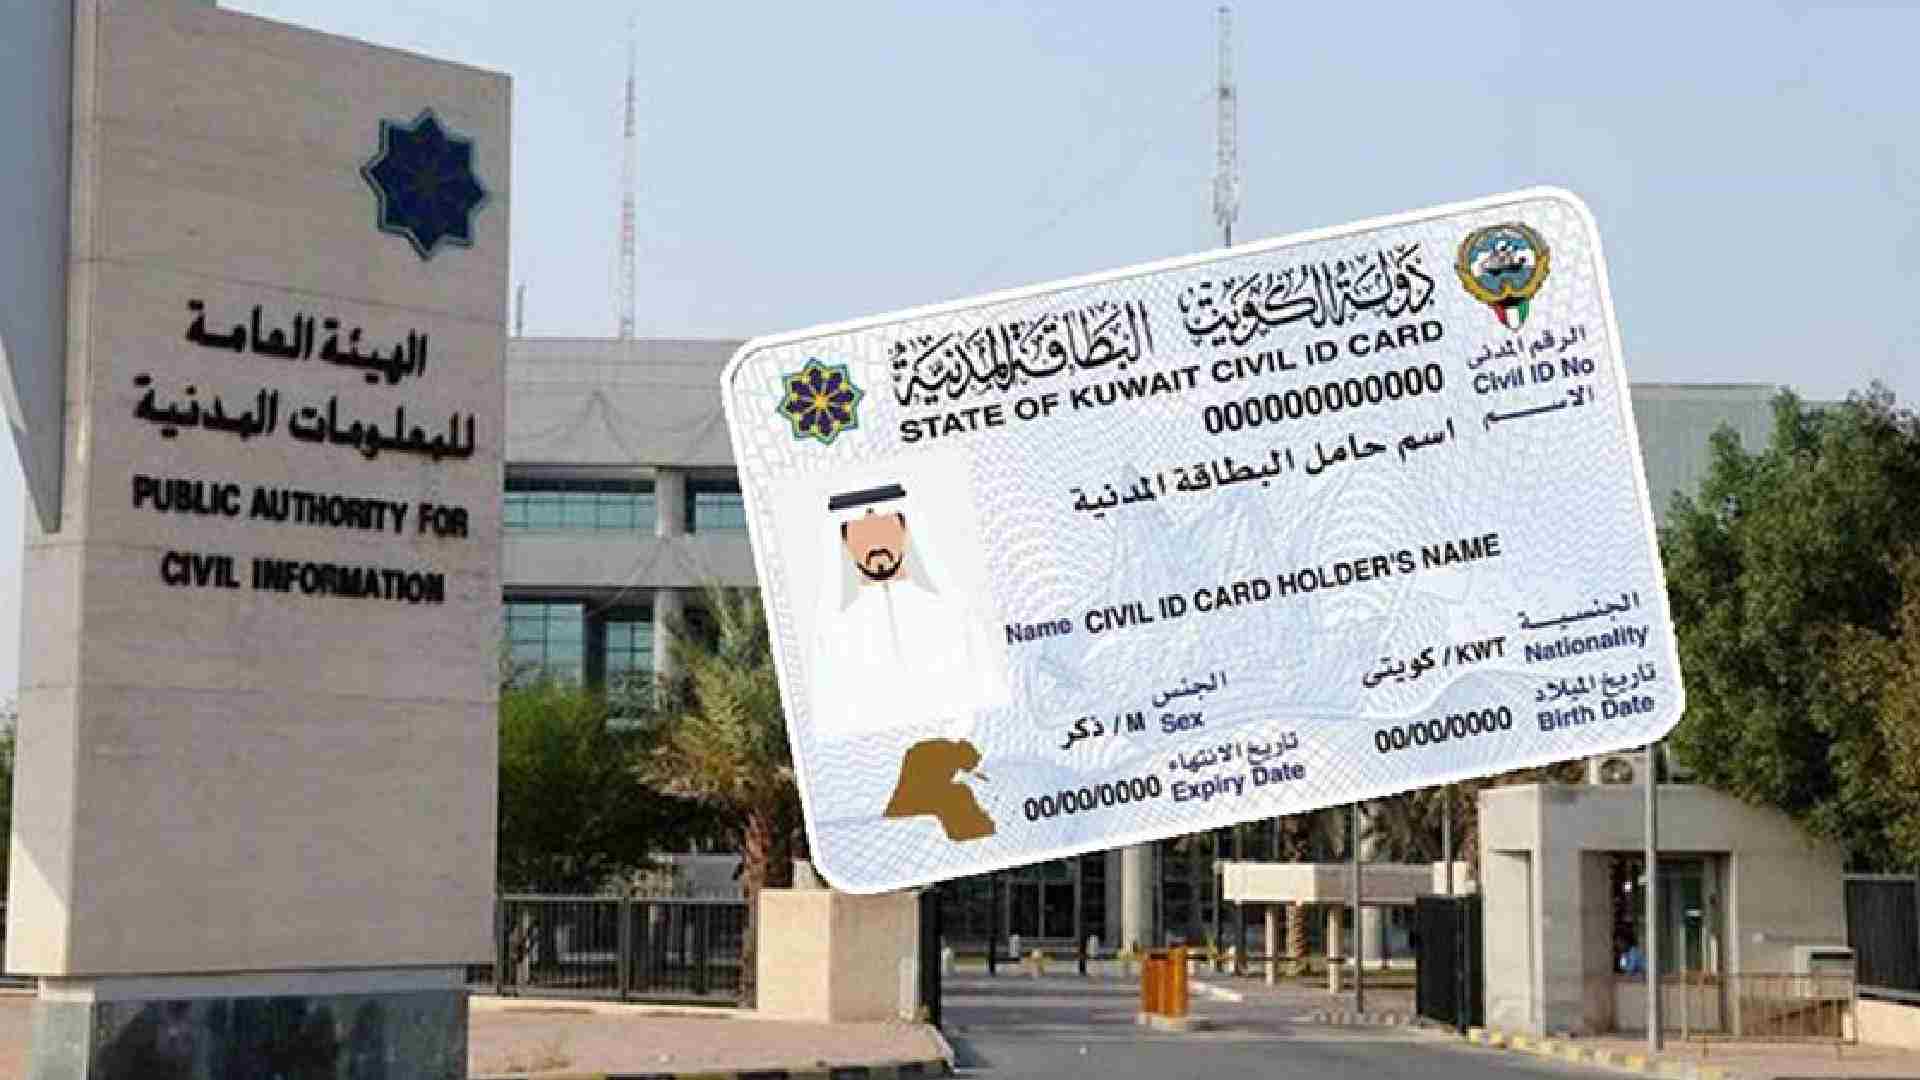 paci civil id status kuwait 